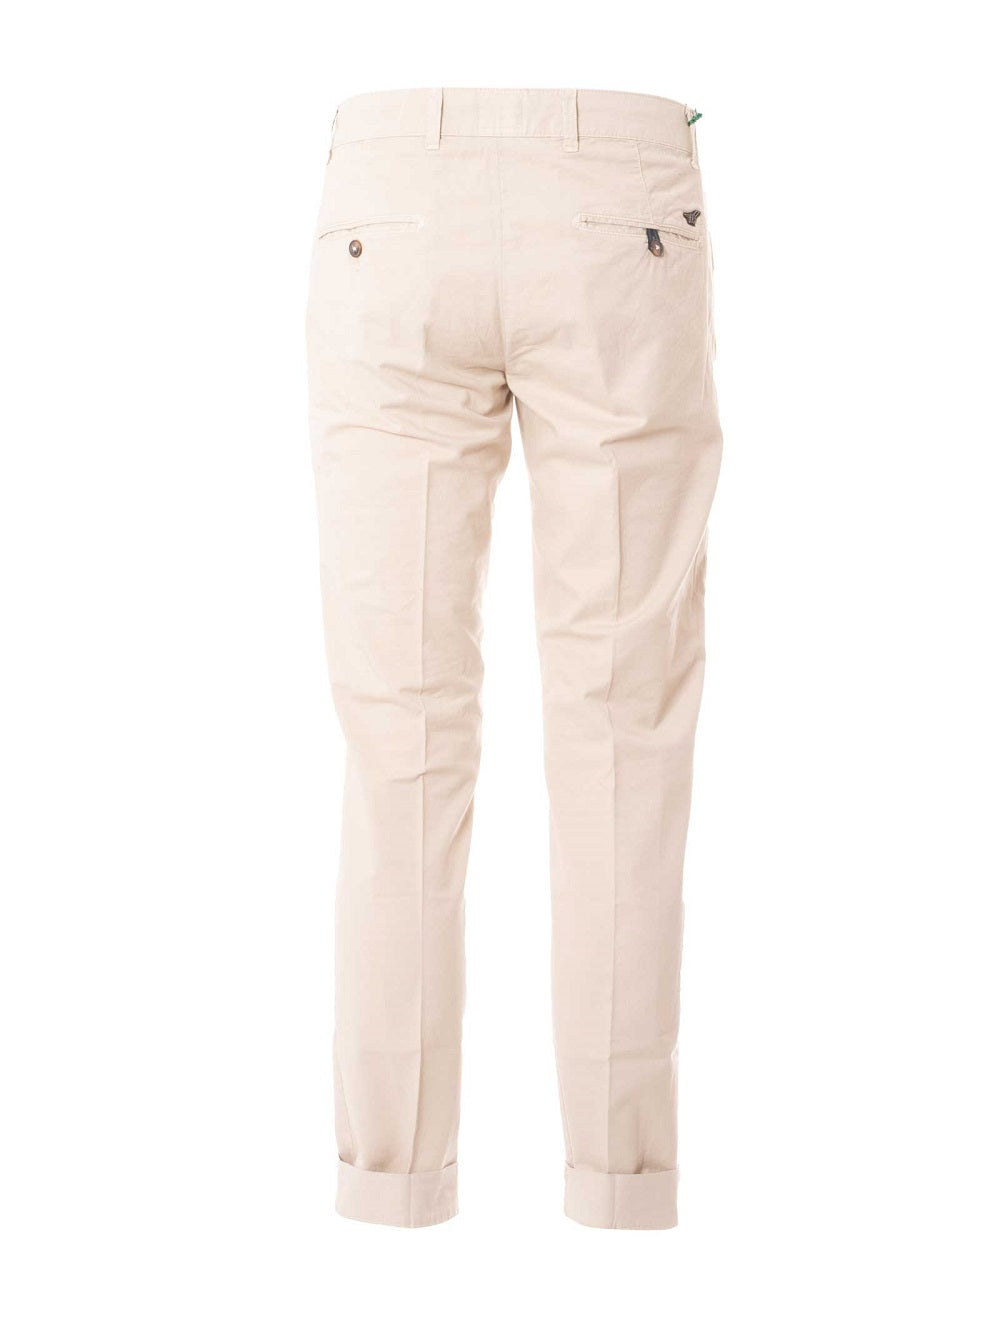 Pantaloni Henry Cotton's beige tinta unita con tasche america frontali e posteriori